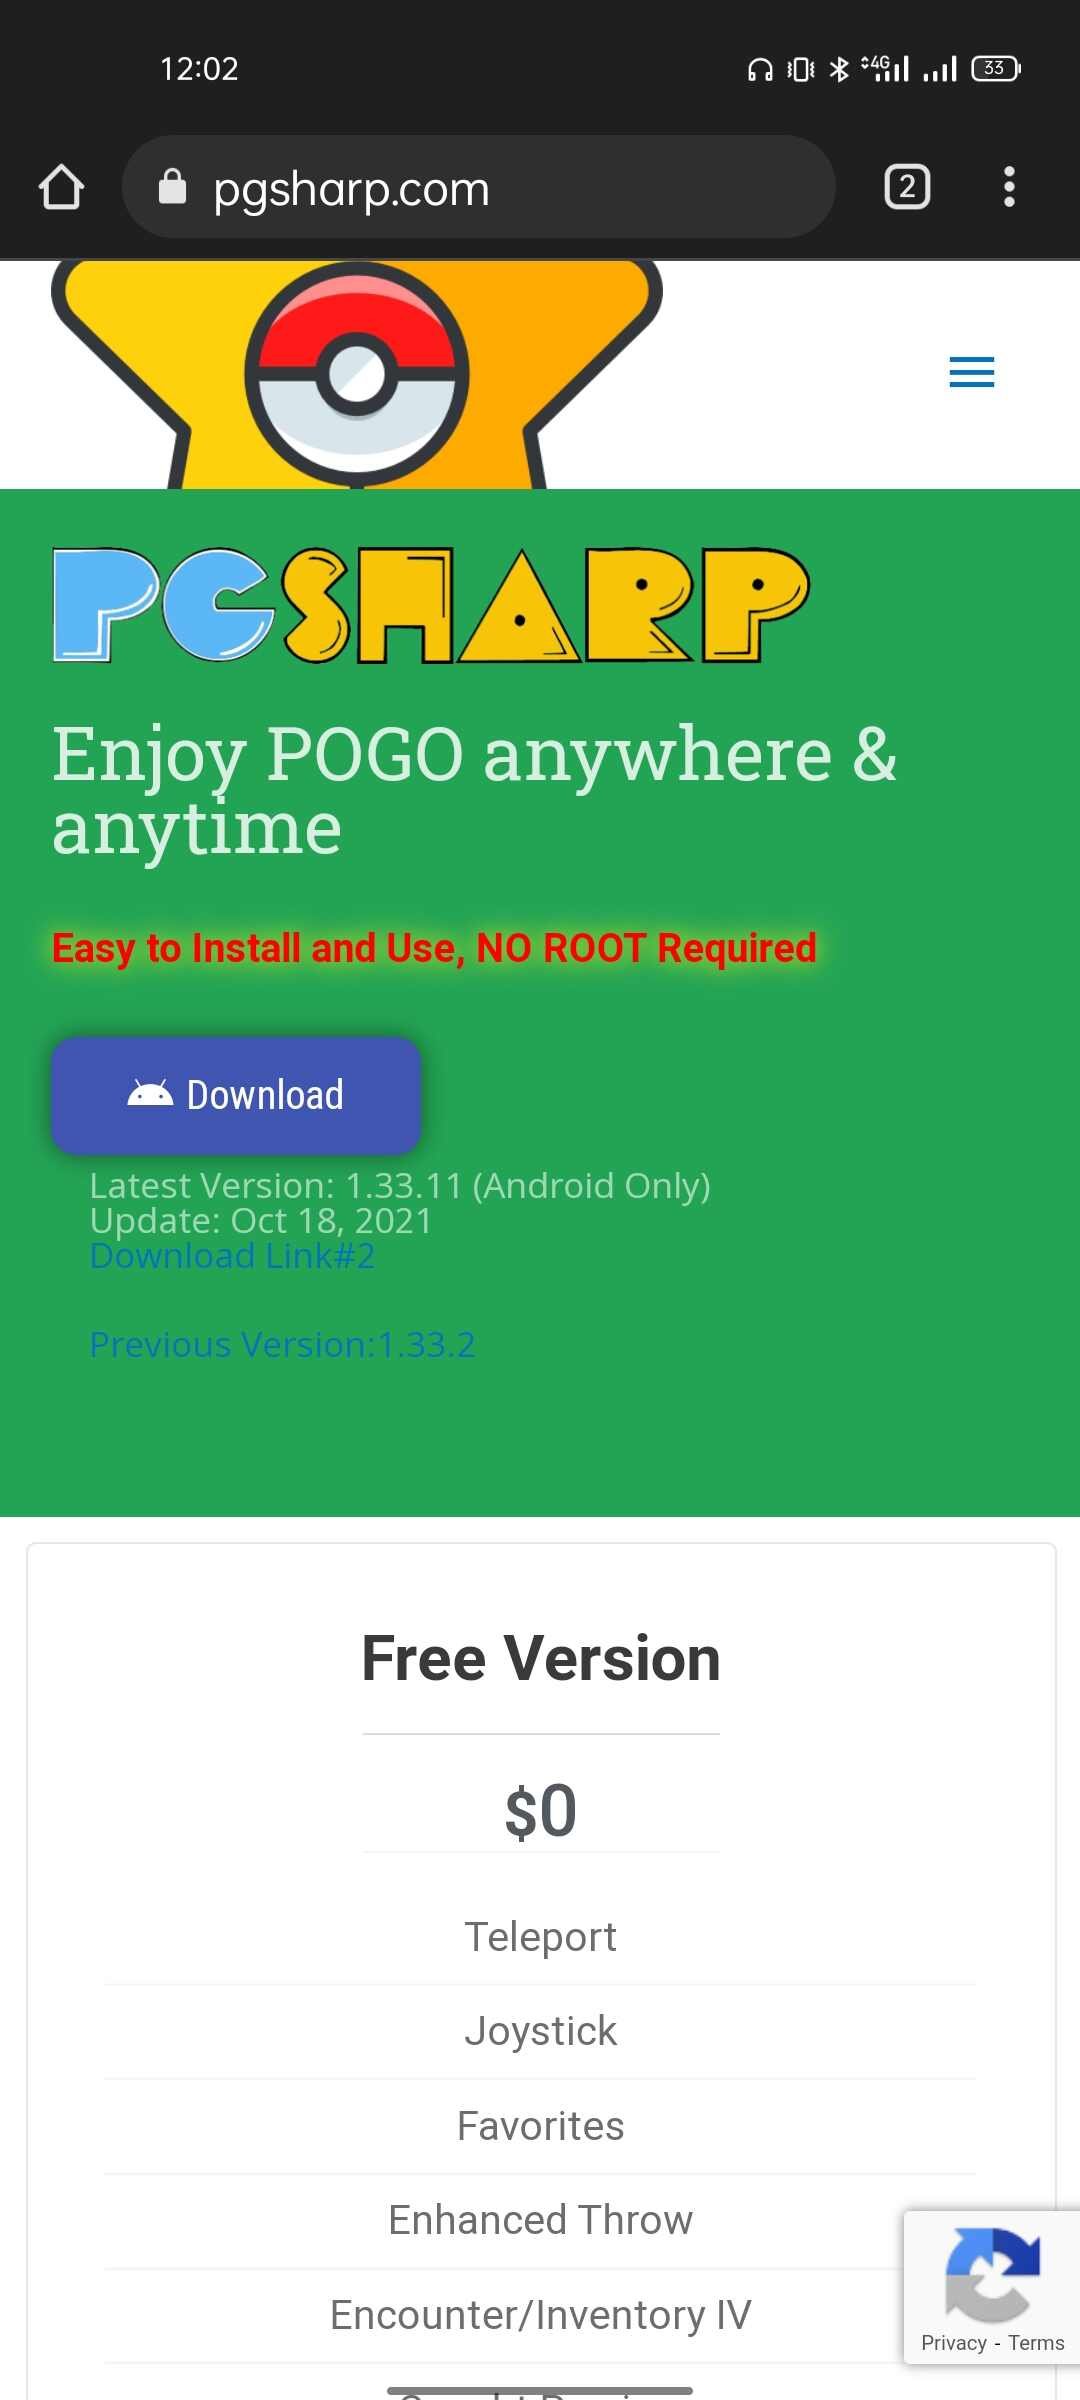 pgsharp app not installed